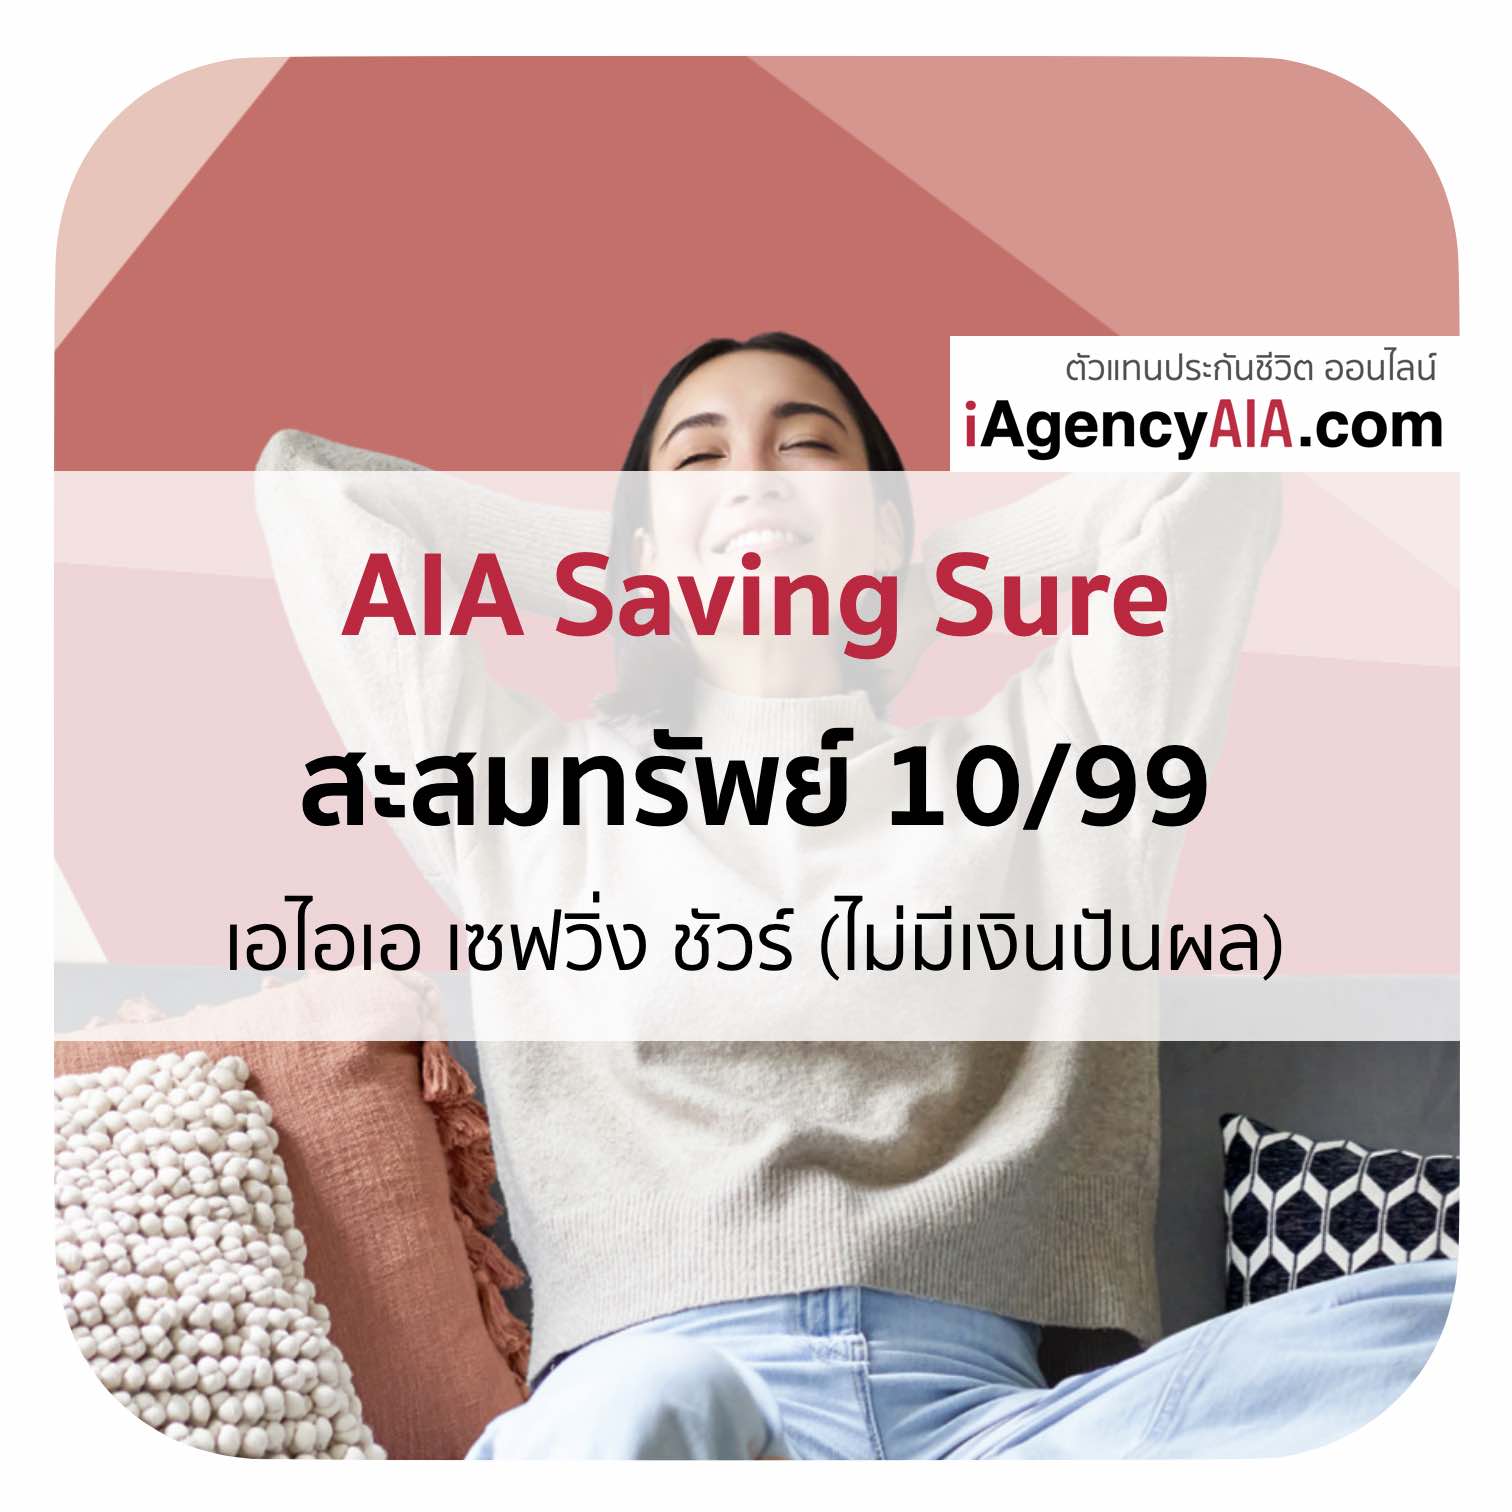 AIA Saving Sure 10/99 ประกันสะสมทรัพย์ ลดหย่อนภาษี เอไอเอ ส่งเบี้ยสั้น